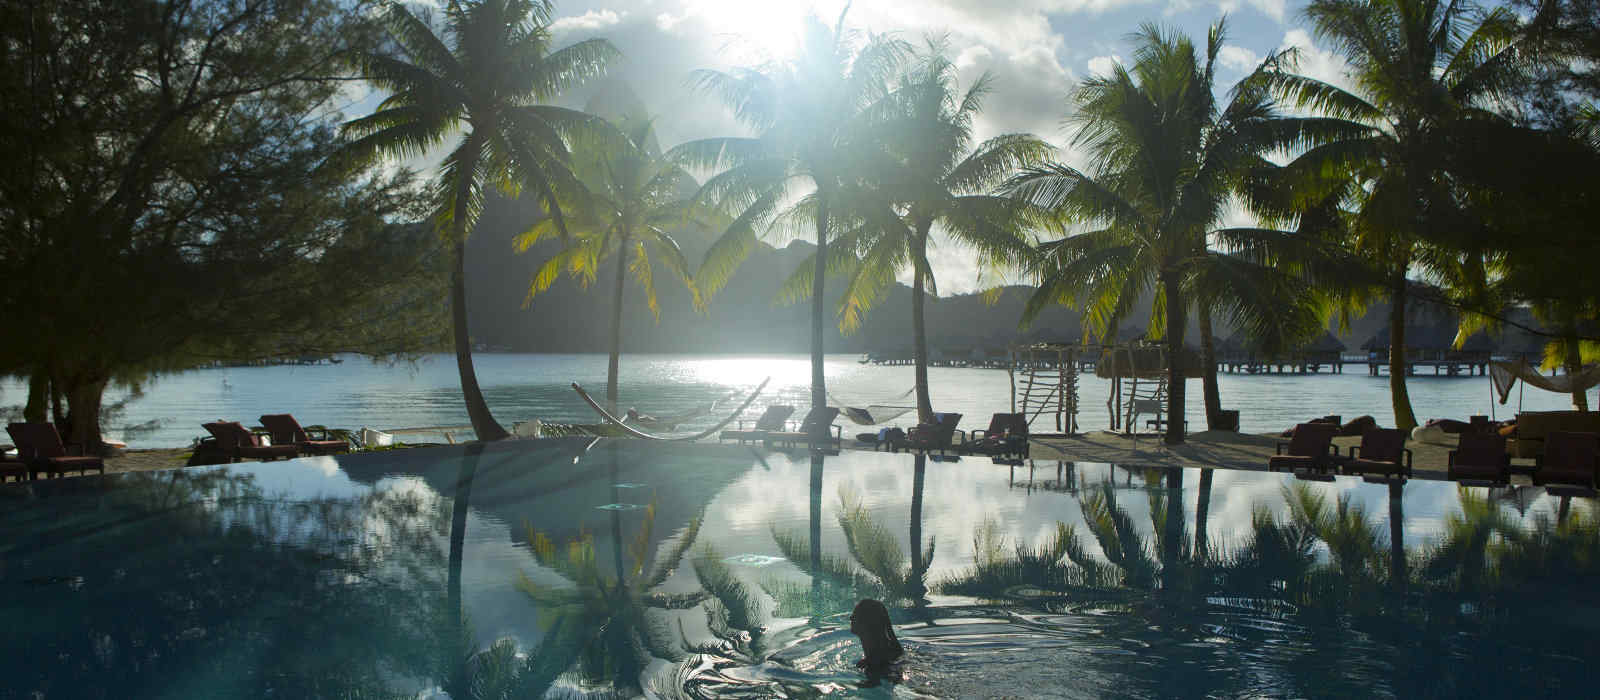 réserver sur internet votre voyage en Polynésie